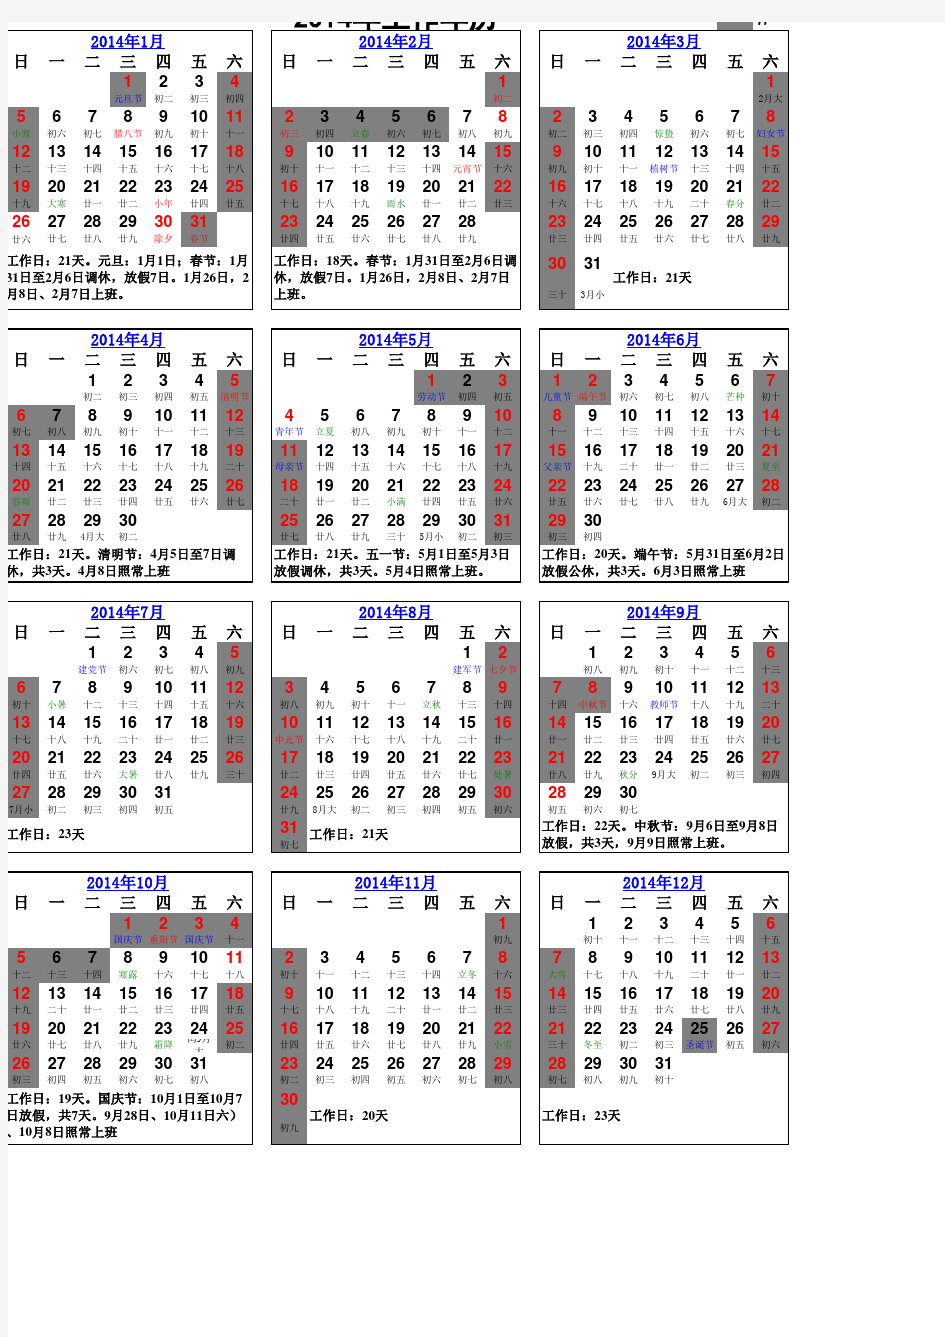 2014年度工作日历 工作天数 节假日安排